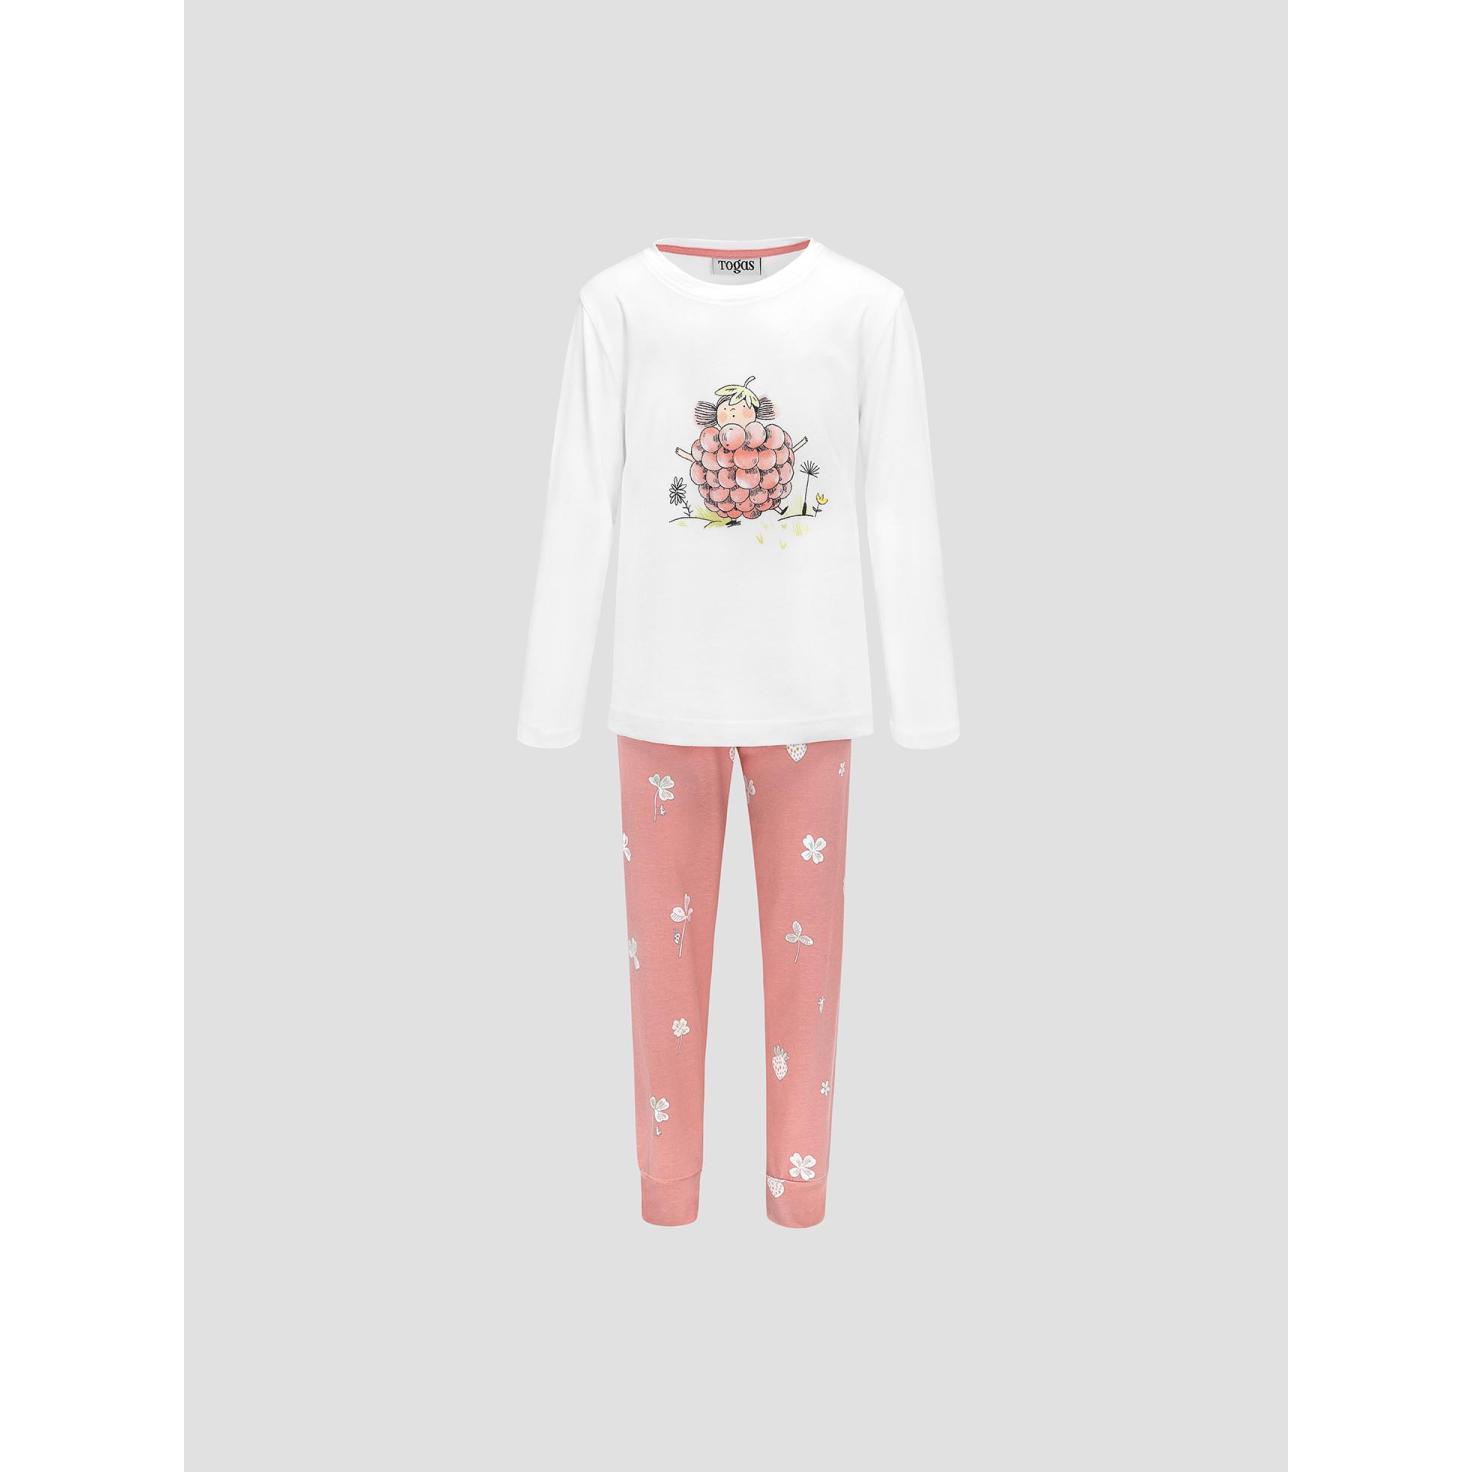 Пижама для девочек Kids by togas Стробби бело-розовый 116-122 см пижама для девочек kids by togas стробби бело розовый 104 110 см